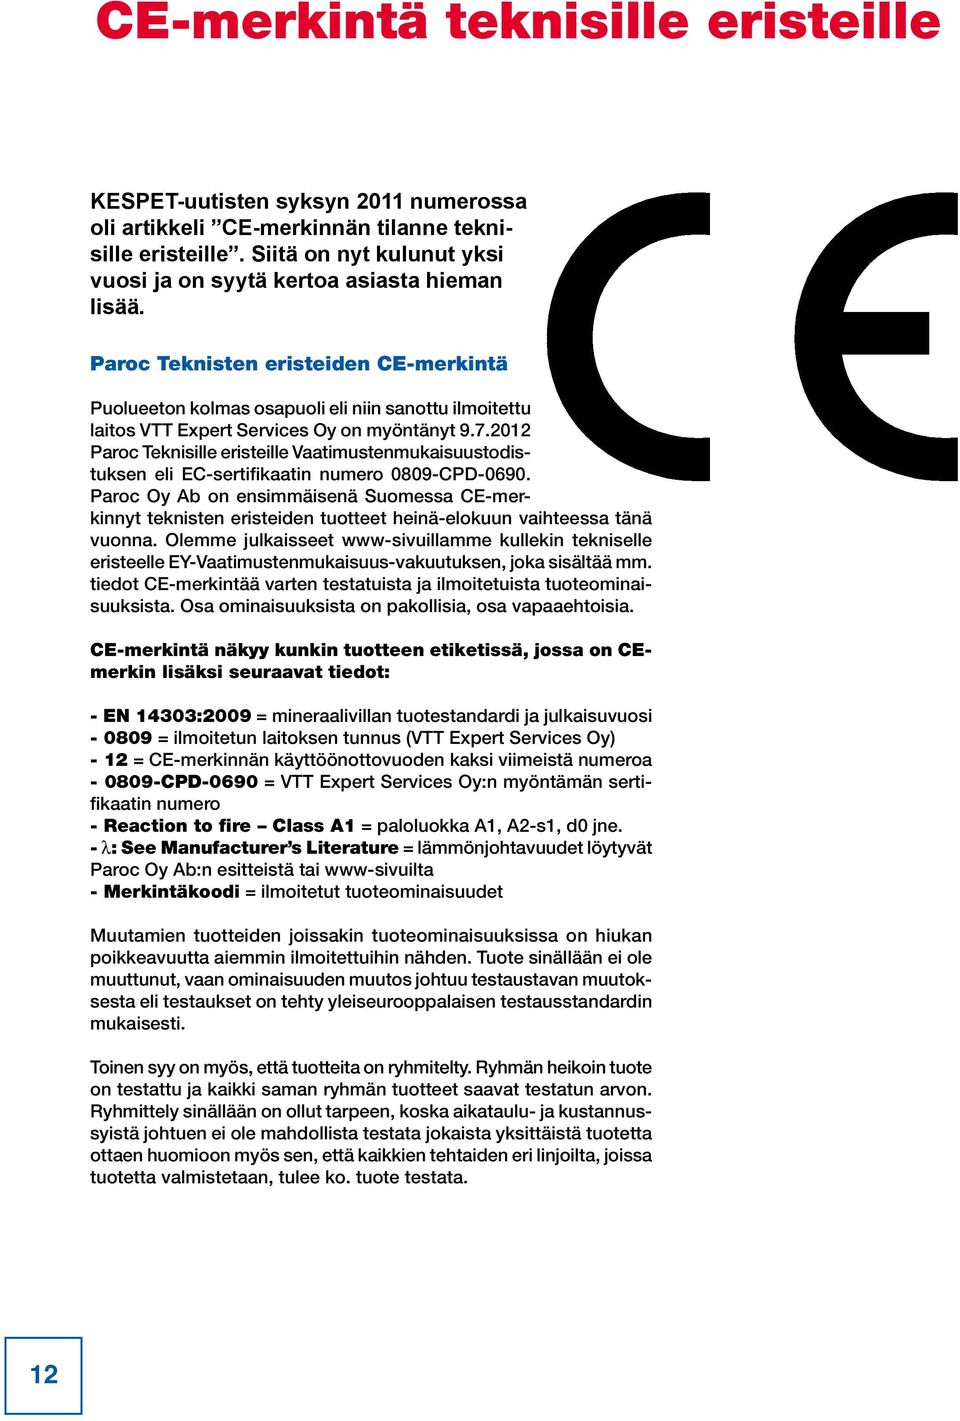 Paroc Teknisten eristeiden CE-merkintä Puolueeton kolmas osapuoli eli niin sanottu ilmoitettu laitos VTT Expert Services Oy on myöntänyt 9.7.